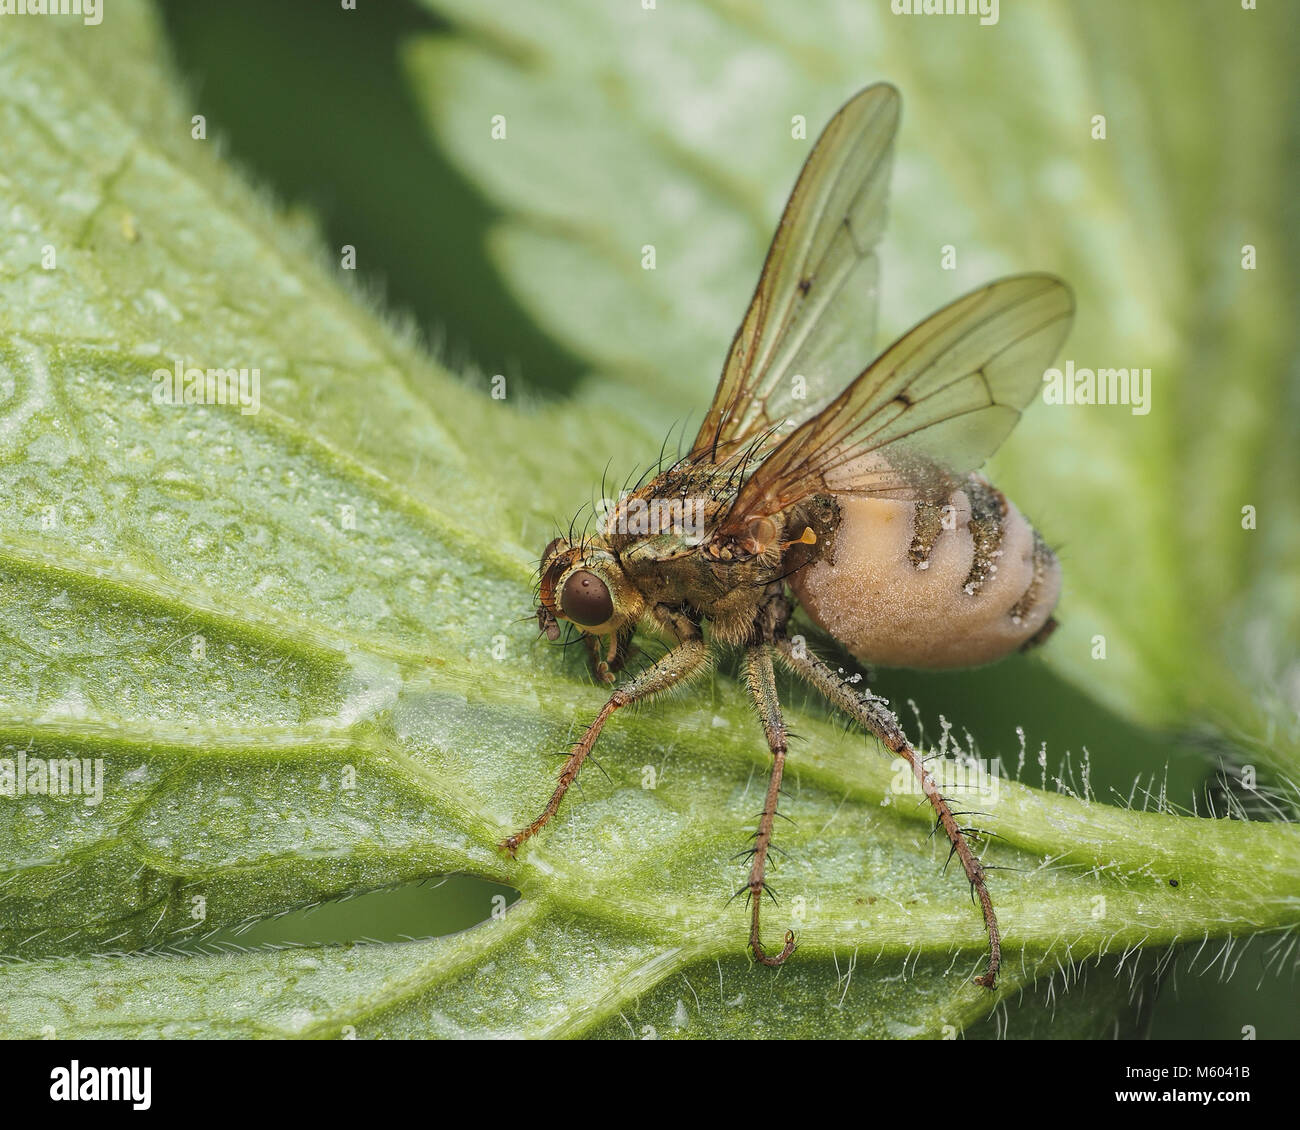 Gelb Mist Fliegen (Scathophaga Stercoraria) durch die Entomopthera sp infiziert. Pilz. Tipperary, Irland Stockfoto